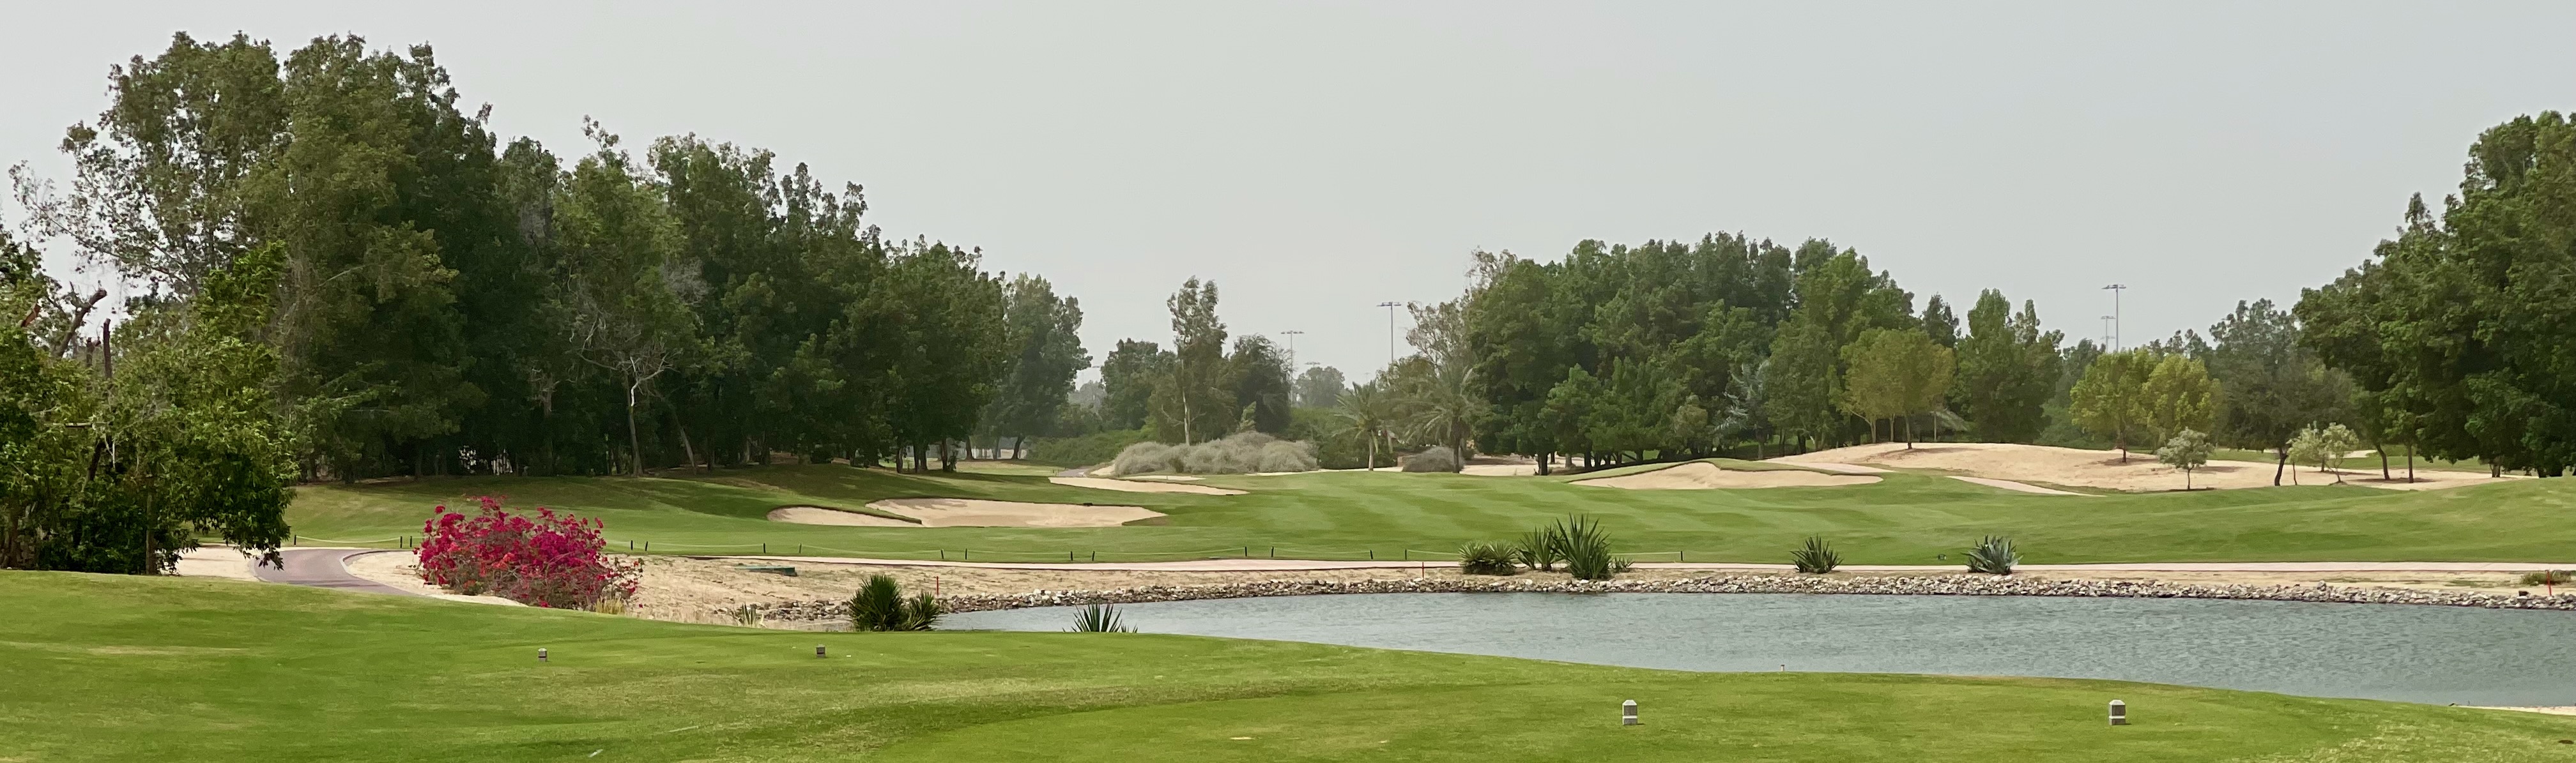 Abu Dhabi GC- hole 5